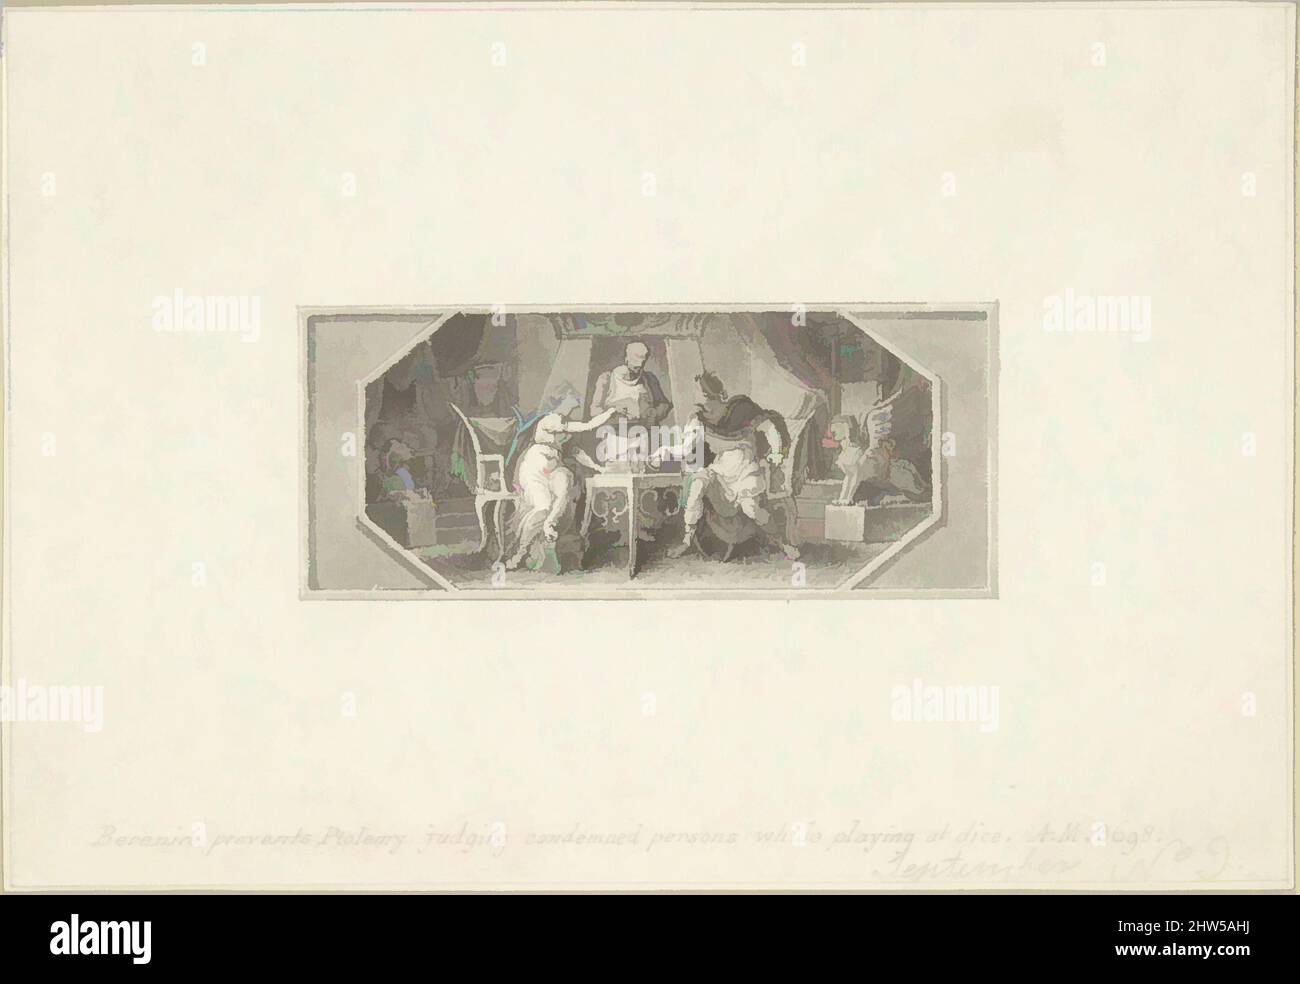 Von Berenice inspirierte Kunst verhindert, dass Ptolemäus verurteilte Personen während des Spiels bei Dice beurteilt, 18.–19. Jahrhundert, Stift und braune Tinte, Pinsel und Grauwäsche, Blatt: 3 3/16 × 4 5/8 Zoll (8,1 × 11,7 cm), Zeichnungen, Edward Francis Burney (British, Worcester 1760–1848 London, Klassische Werke, die von Artotop mit einem Schuss Moderne modernisiert wurden. Formen, Farbe und Wert, auffällige visuelle Wirkung auf Kunst. Emotionen durch Freiheit von Kunstwerken auf zeitgemäße Weise. Eine zeitlose Botschaft, die eine wild kreative neue Richtung verfolgt. Künstler, die sich dem digitalen Medium zuwenden und die Artotop NFT erschaffen Stockfoto